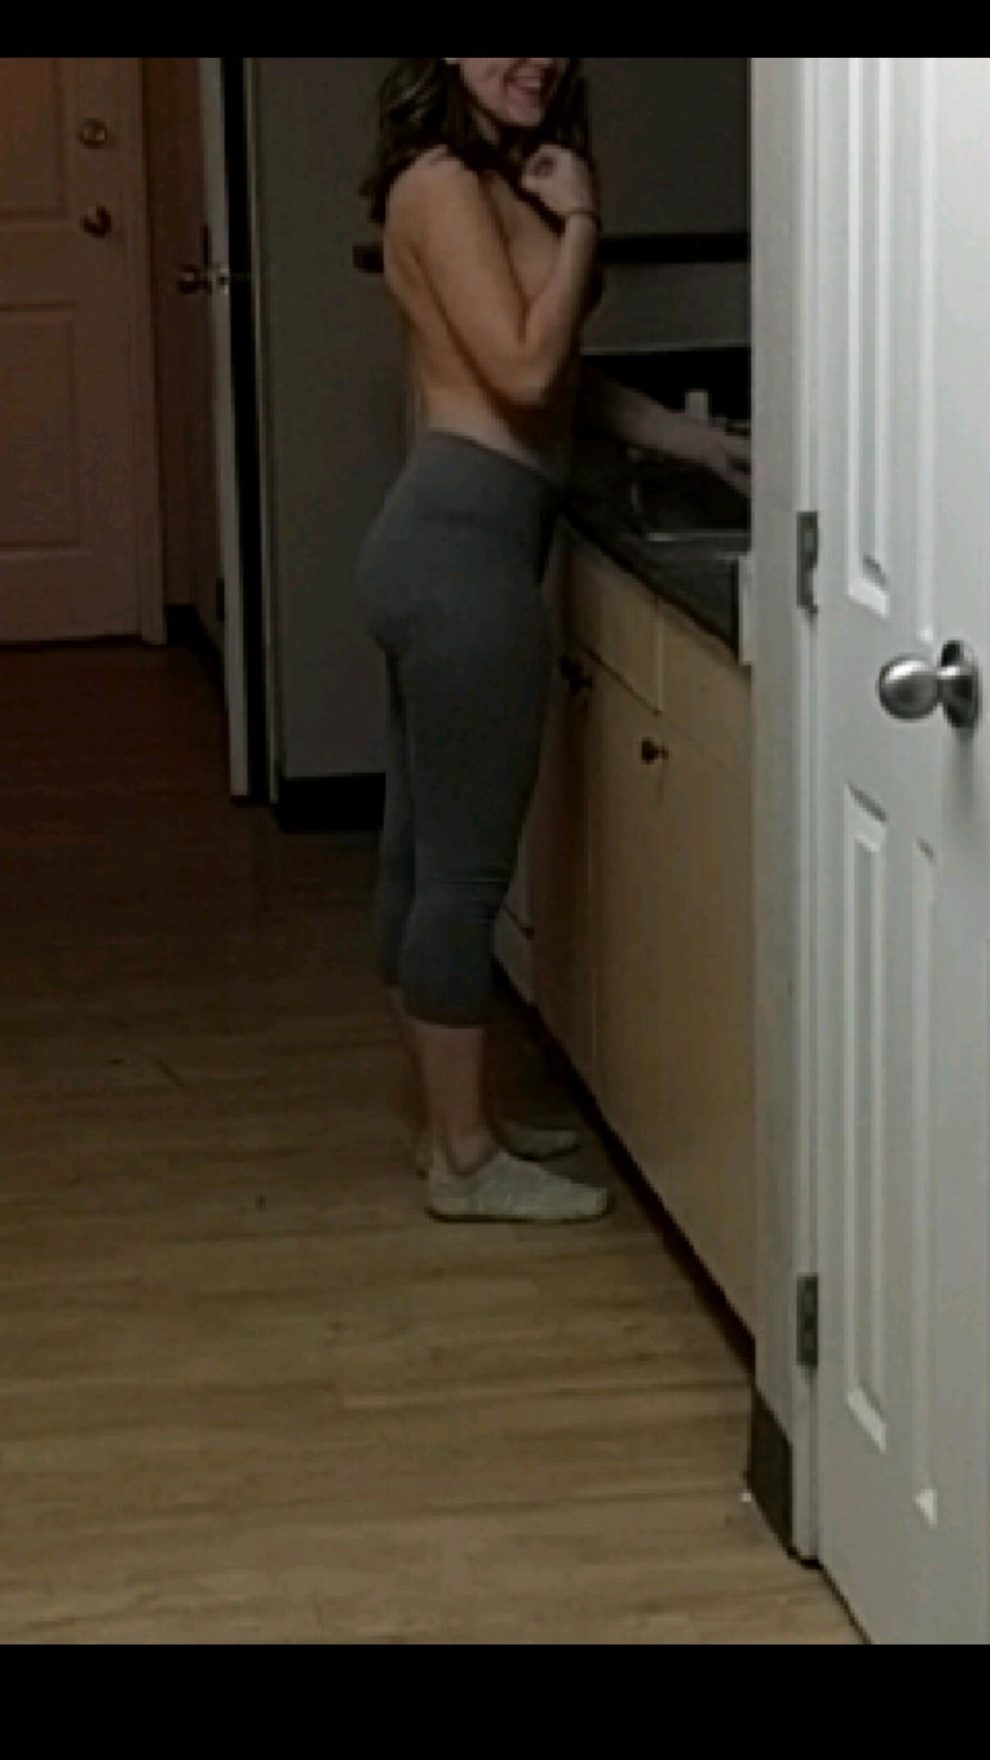 [F]riend dared me to go into dorm kitchen topless :)